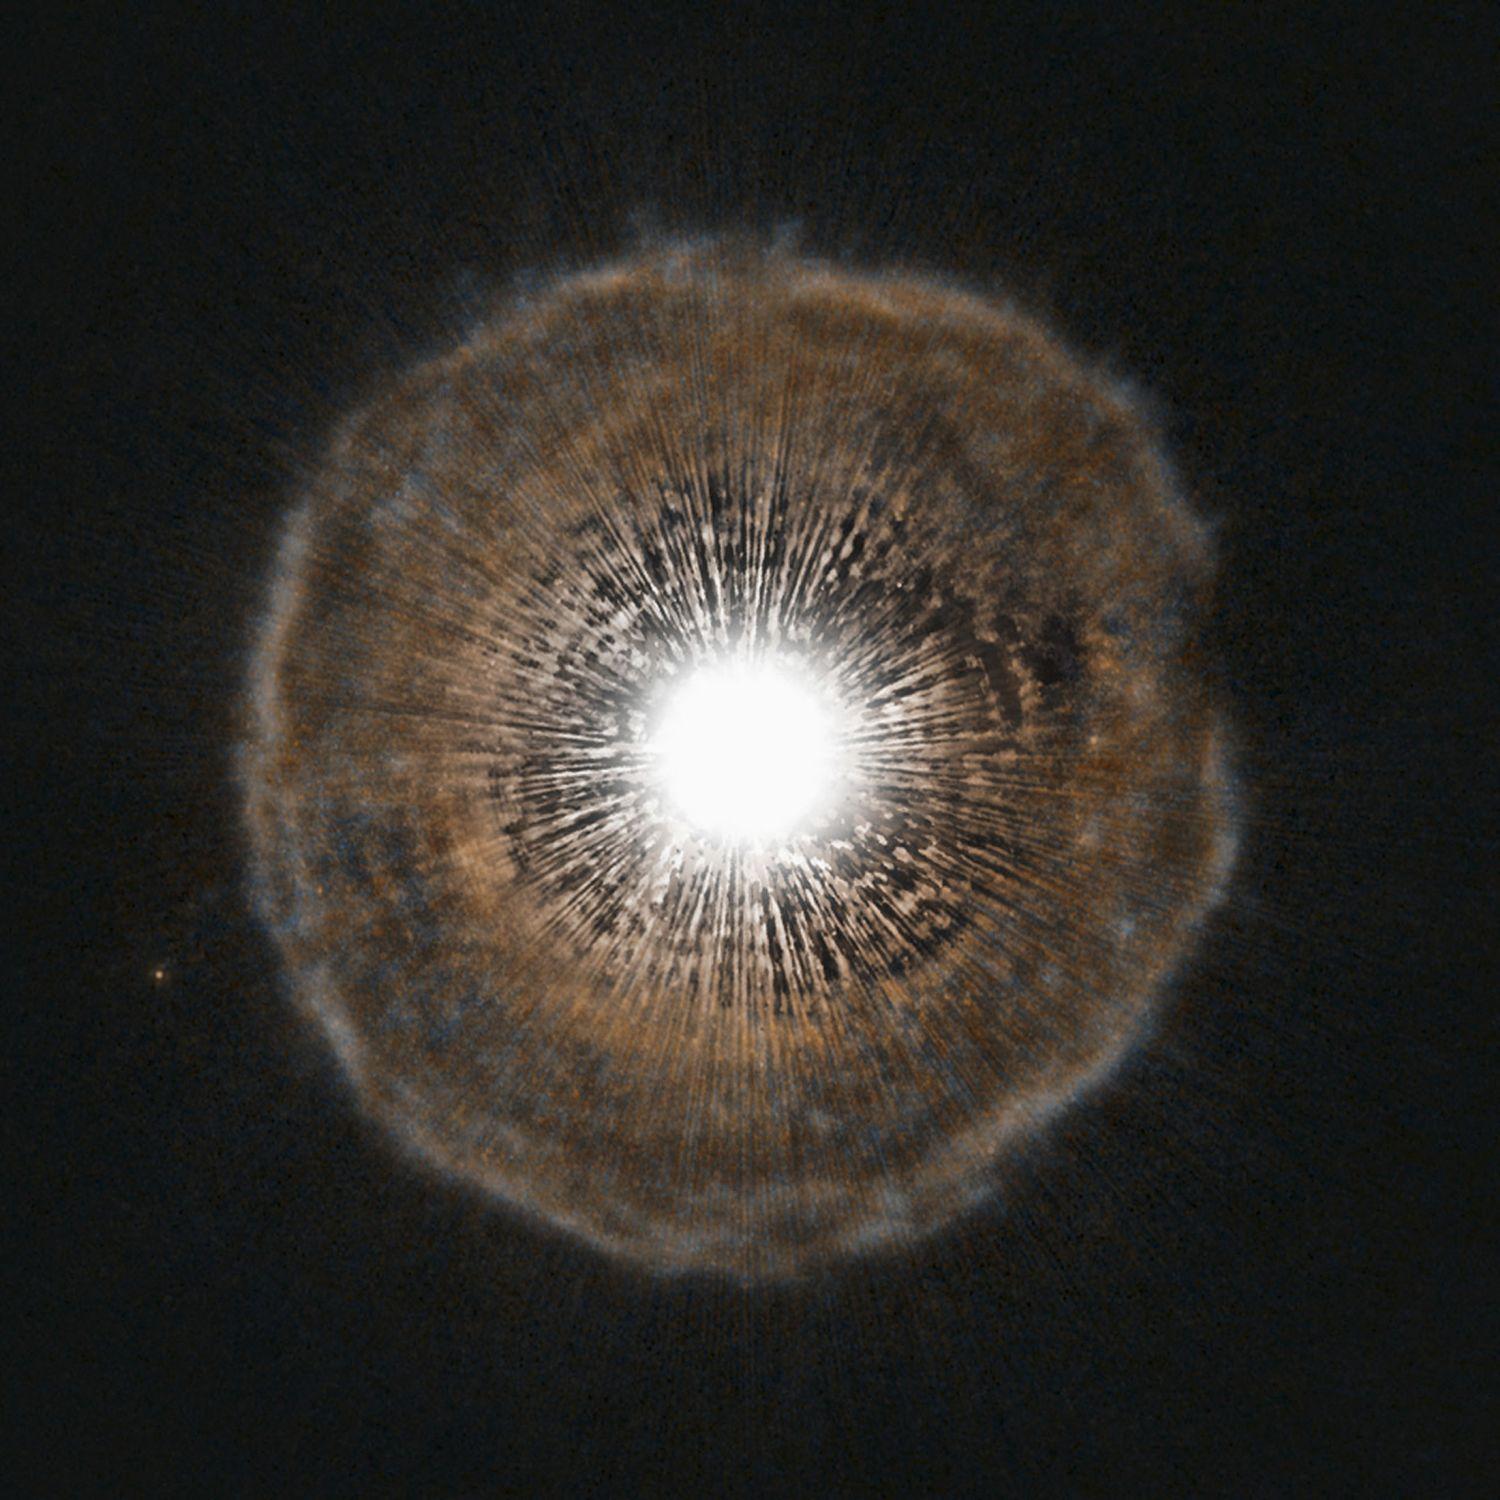 Így néz ki egy haldokló csillag. A Hubble felvételén jól kivehető, ahogy az U Camelopardalis csillagnak fogytán az üzemanyaga, ezért instabillá vált. Ezért aztán éhány ezer évenként kiböffent magából egy hatalmas hélium lufit. Az utolsó ilyen anyagki